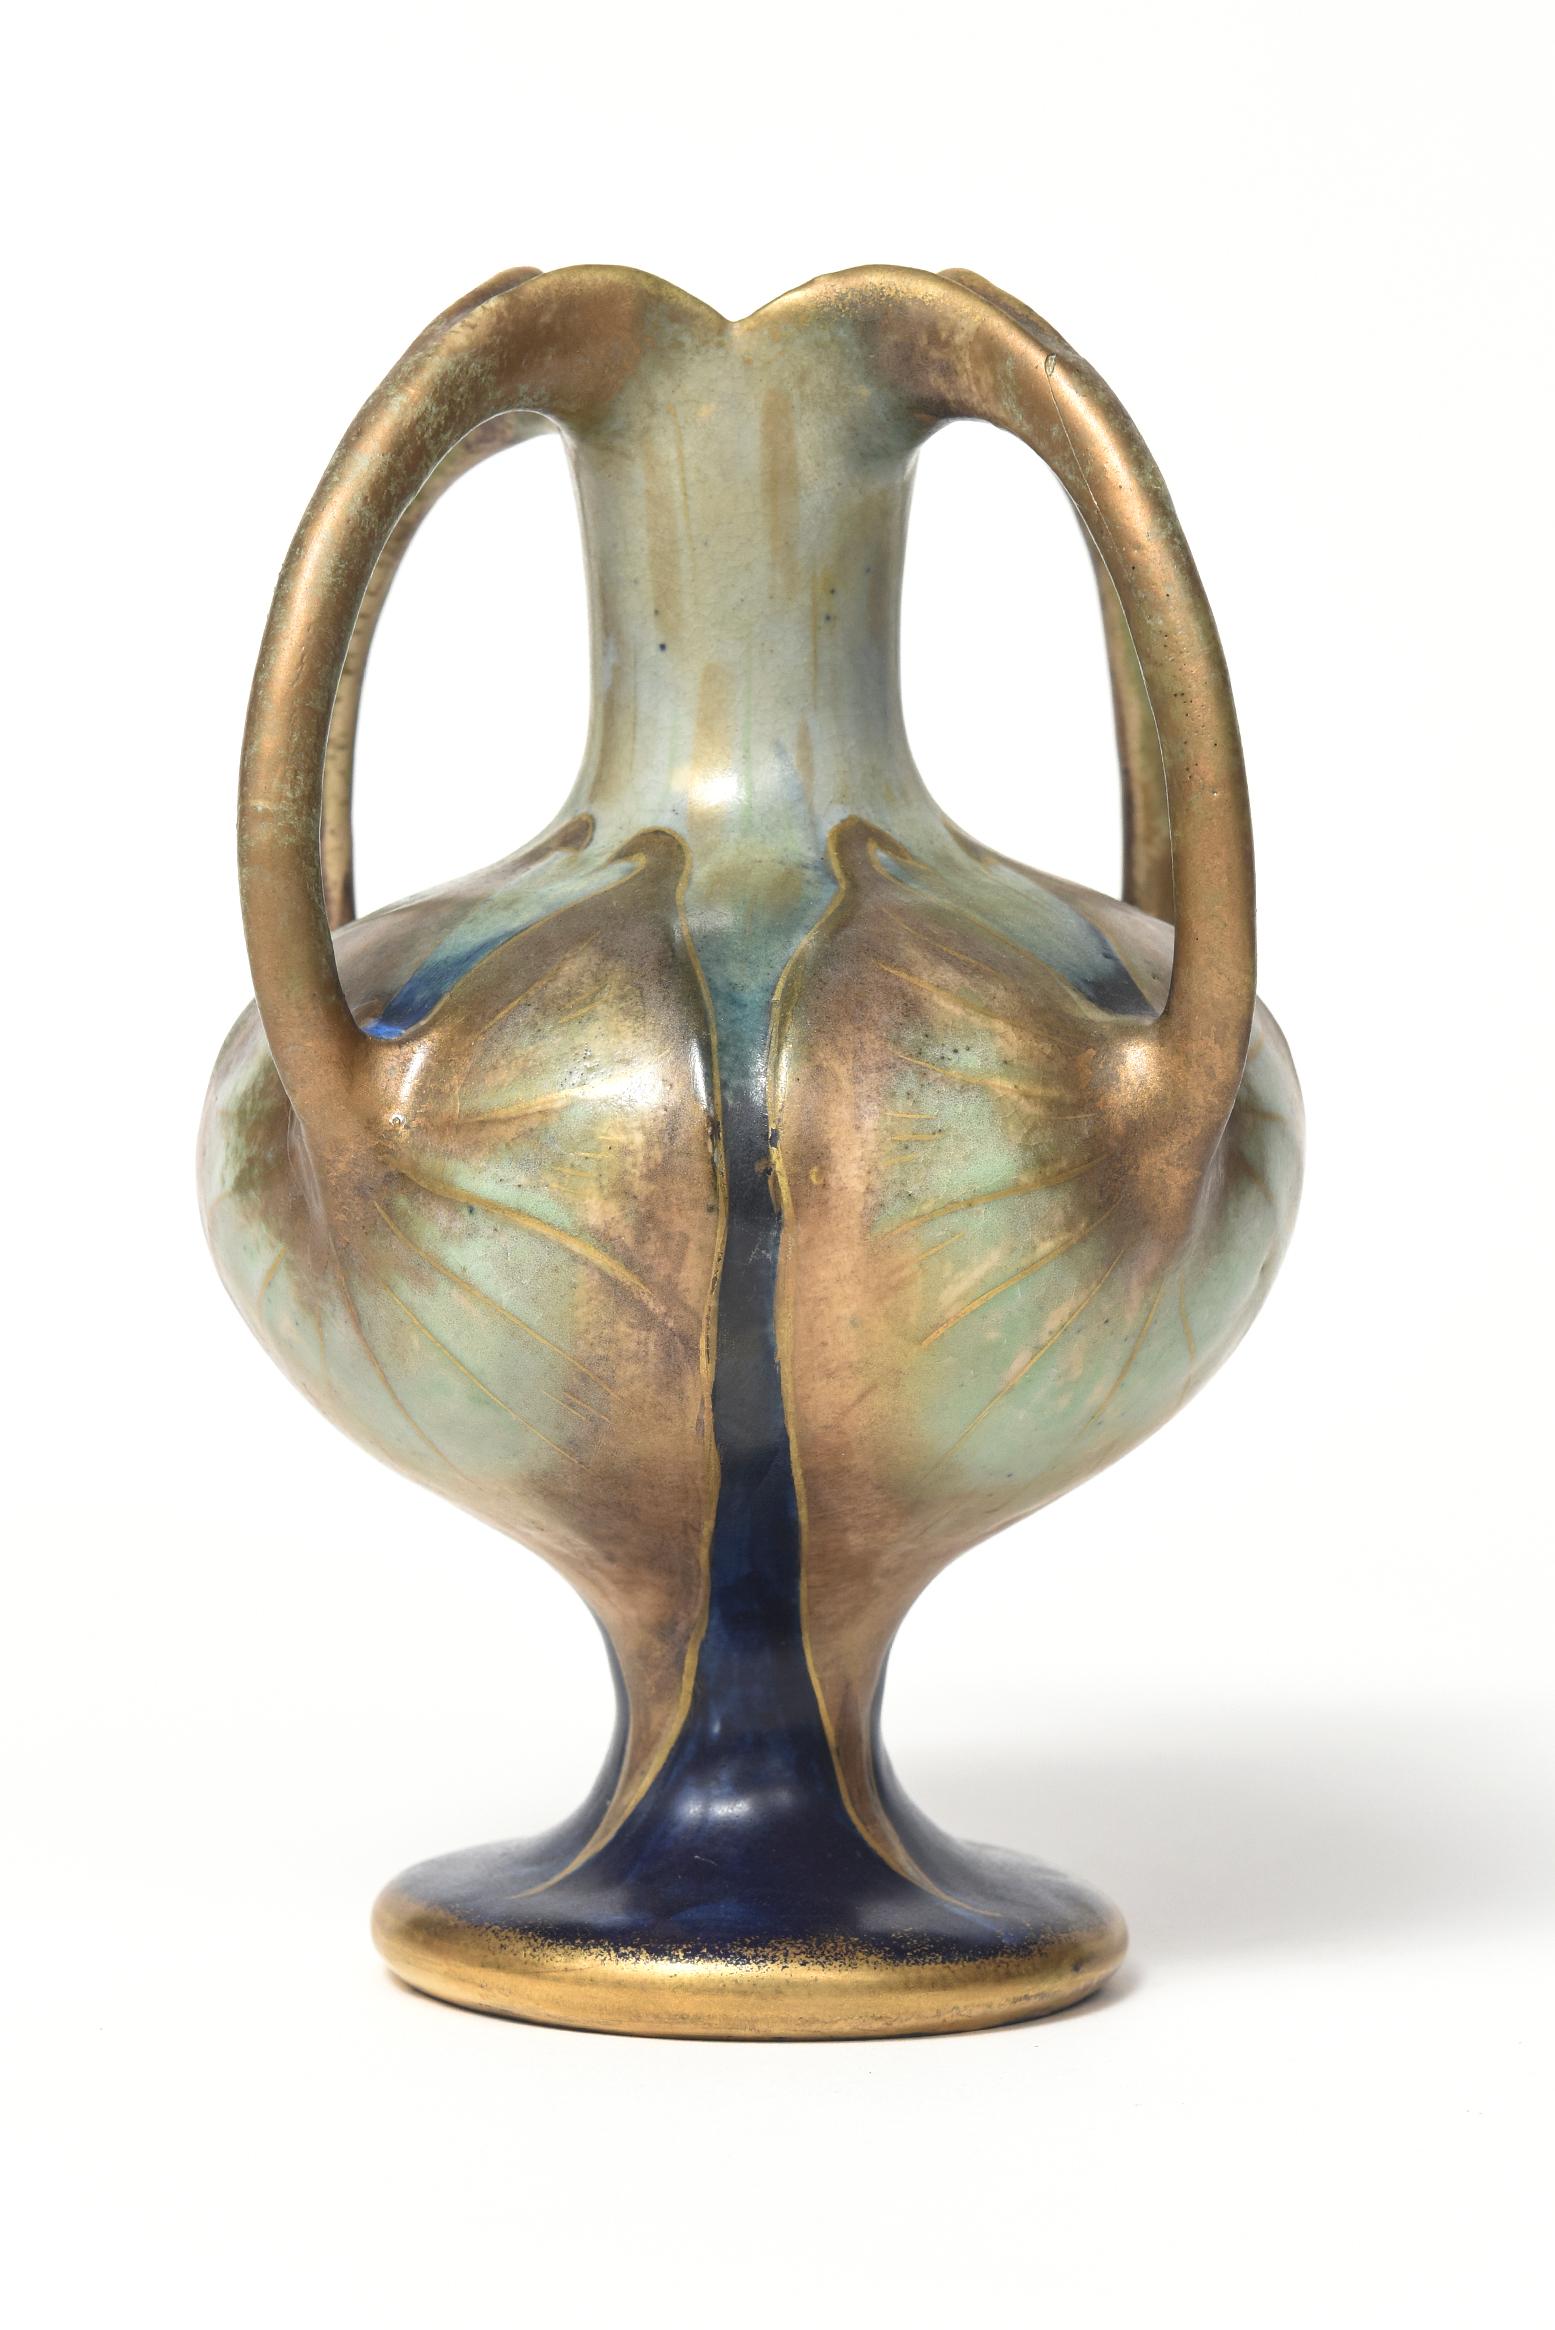 Austrian Paul Dachsel Amphora Art Nouveau Four Handle Lily Gold Blue Green Pottery Vase